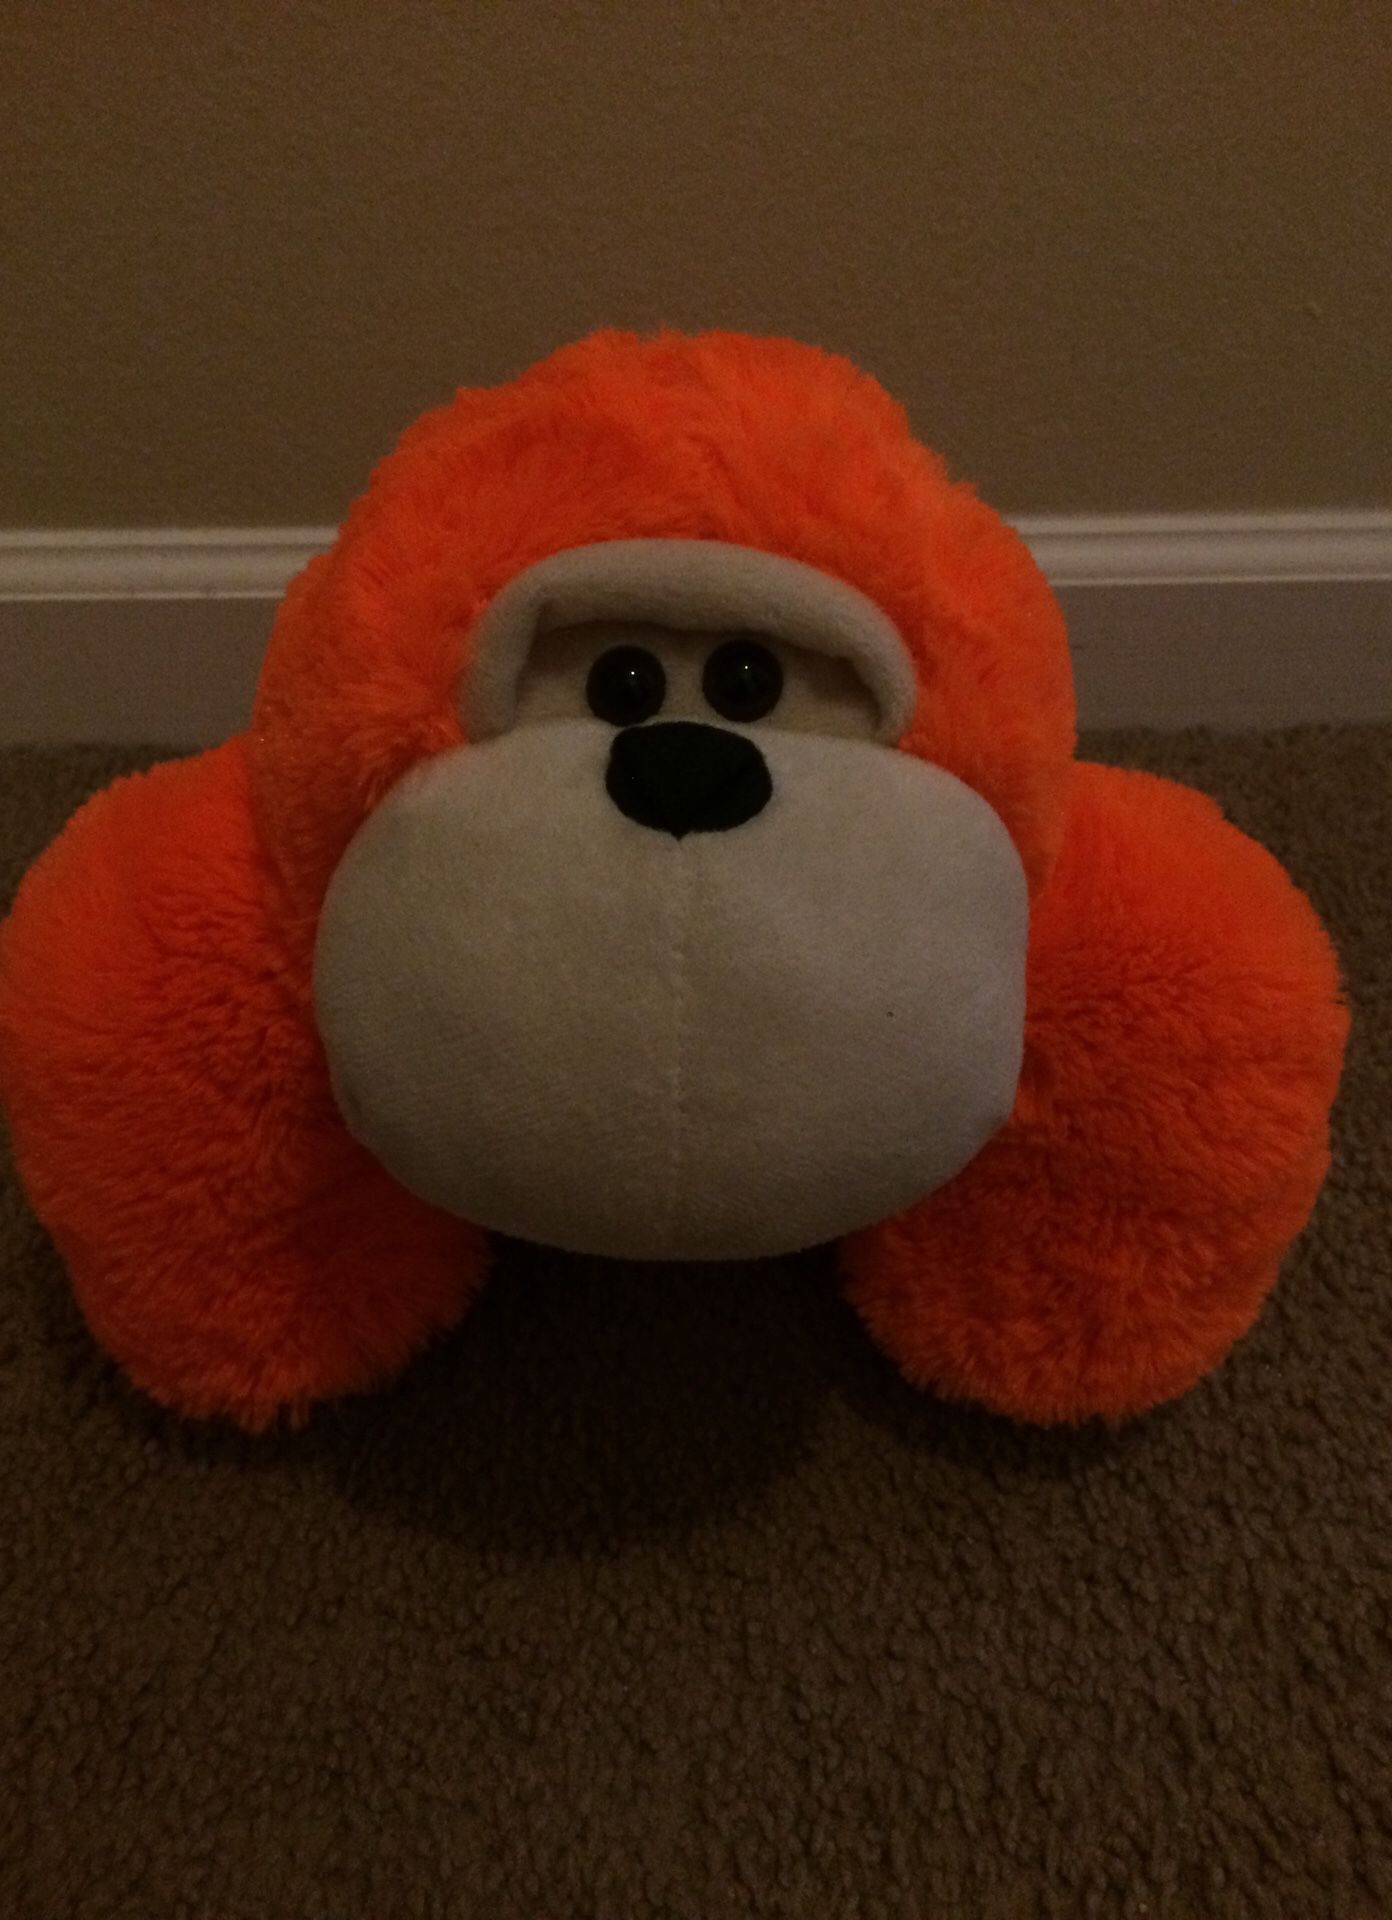 Orange monkey stuffed animal toy